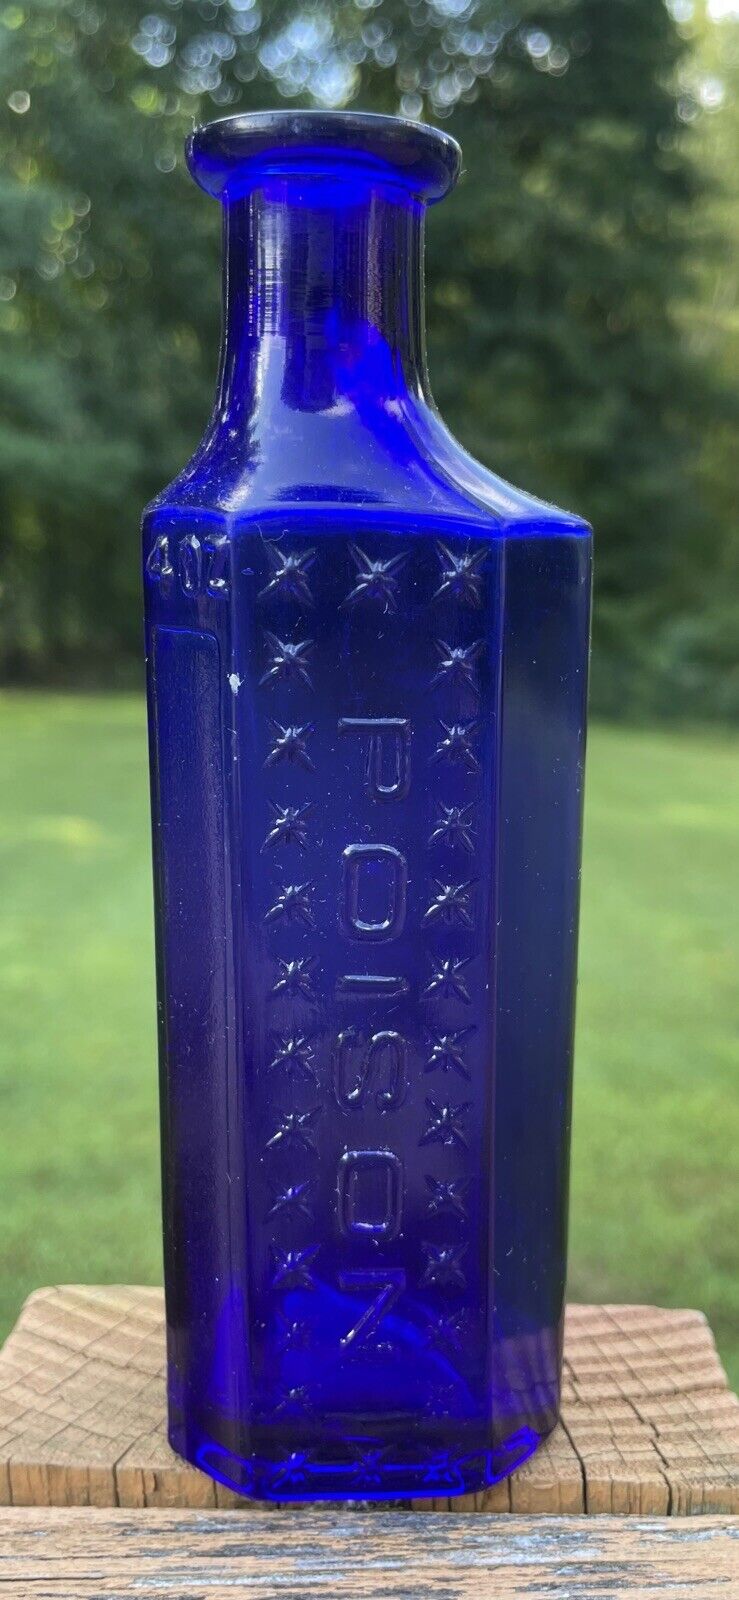 Poison 1870s-1880s Bottle.Very Unique. HK style. Great Gem